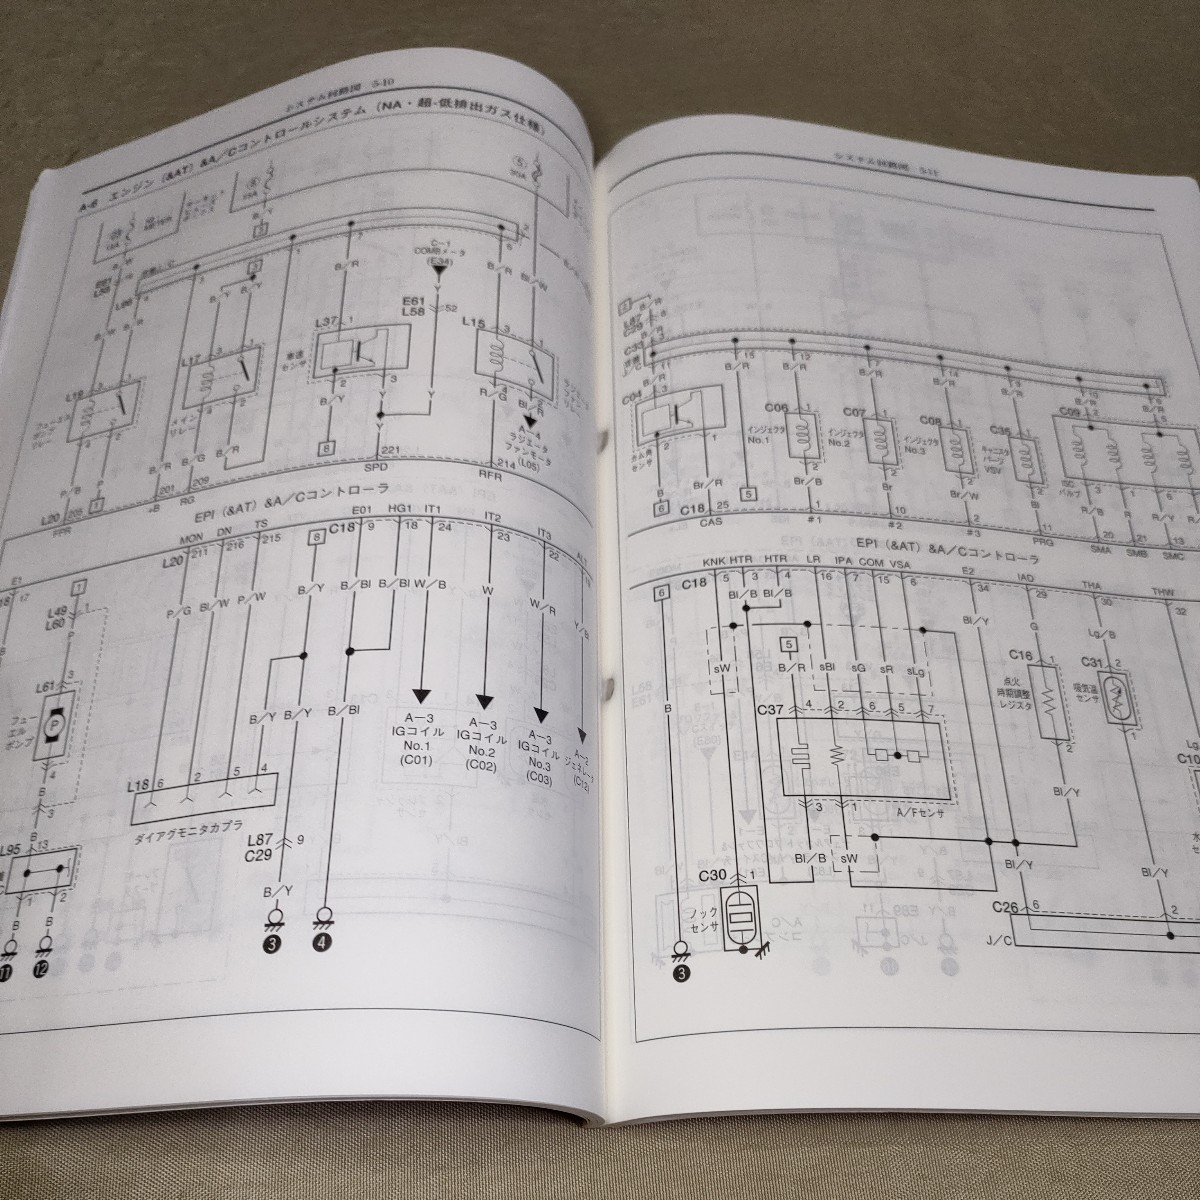  service manual EVERY DA62V/DA62W electric wiring diagram compilation ..No.5 2003 Every / Every 